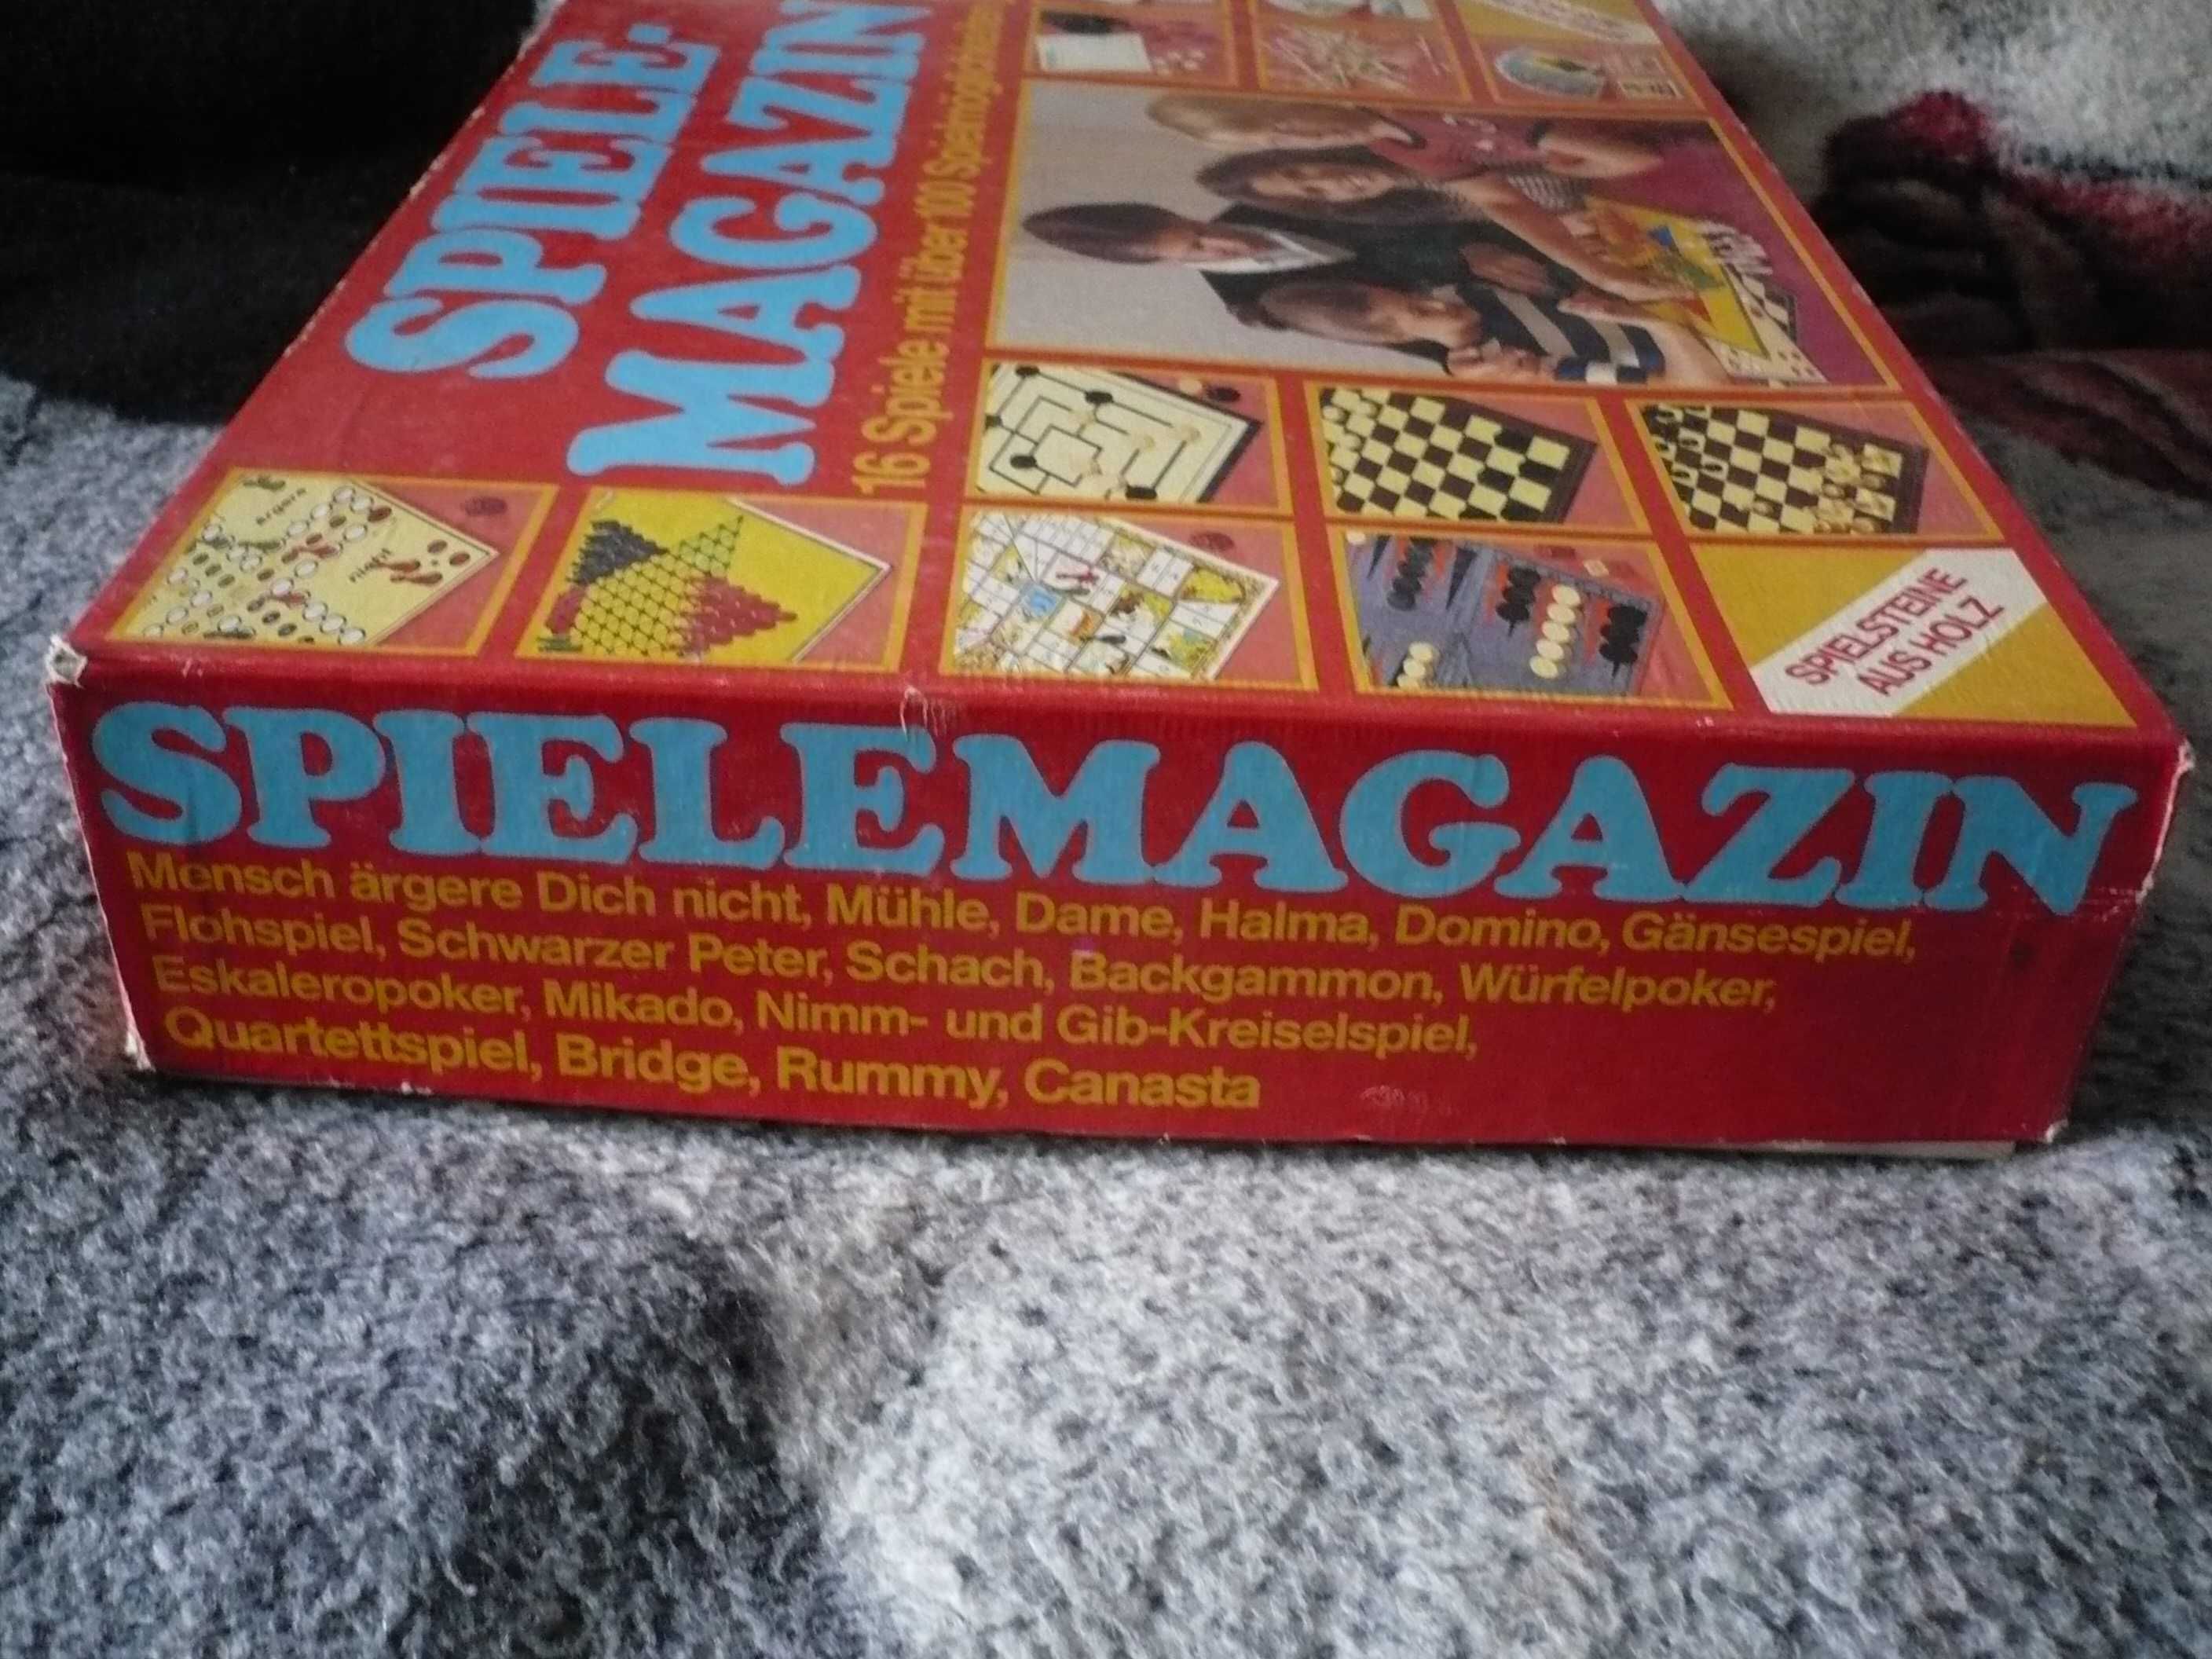 Zestaw gier Spiele-Magazin (wersja niemiecka)